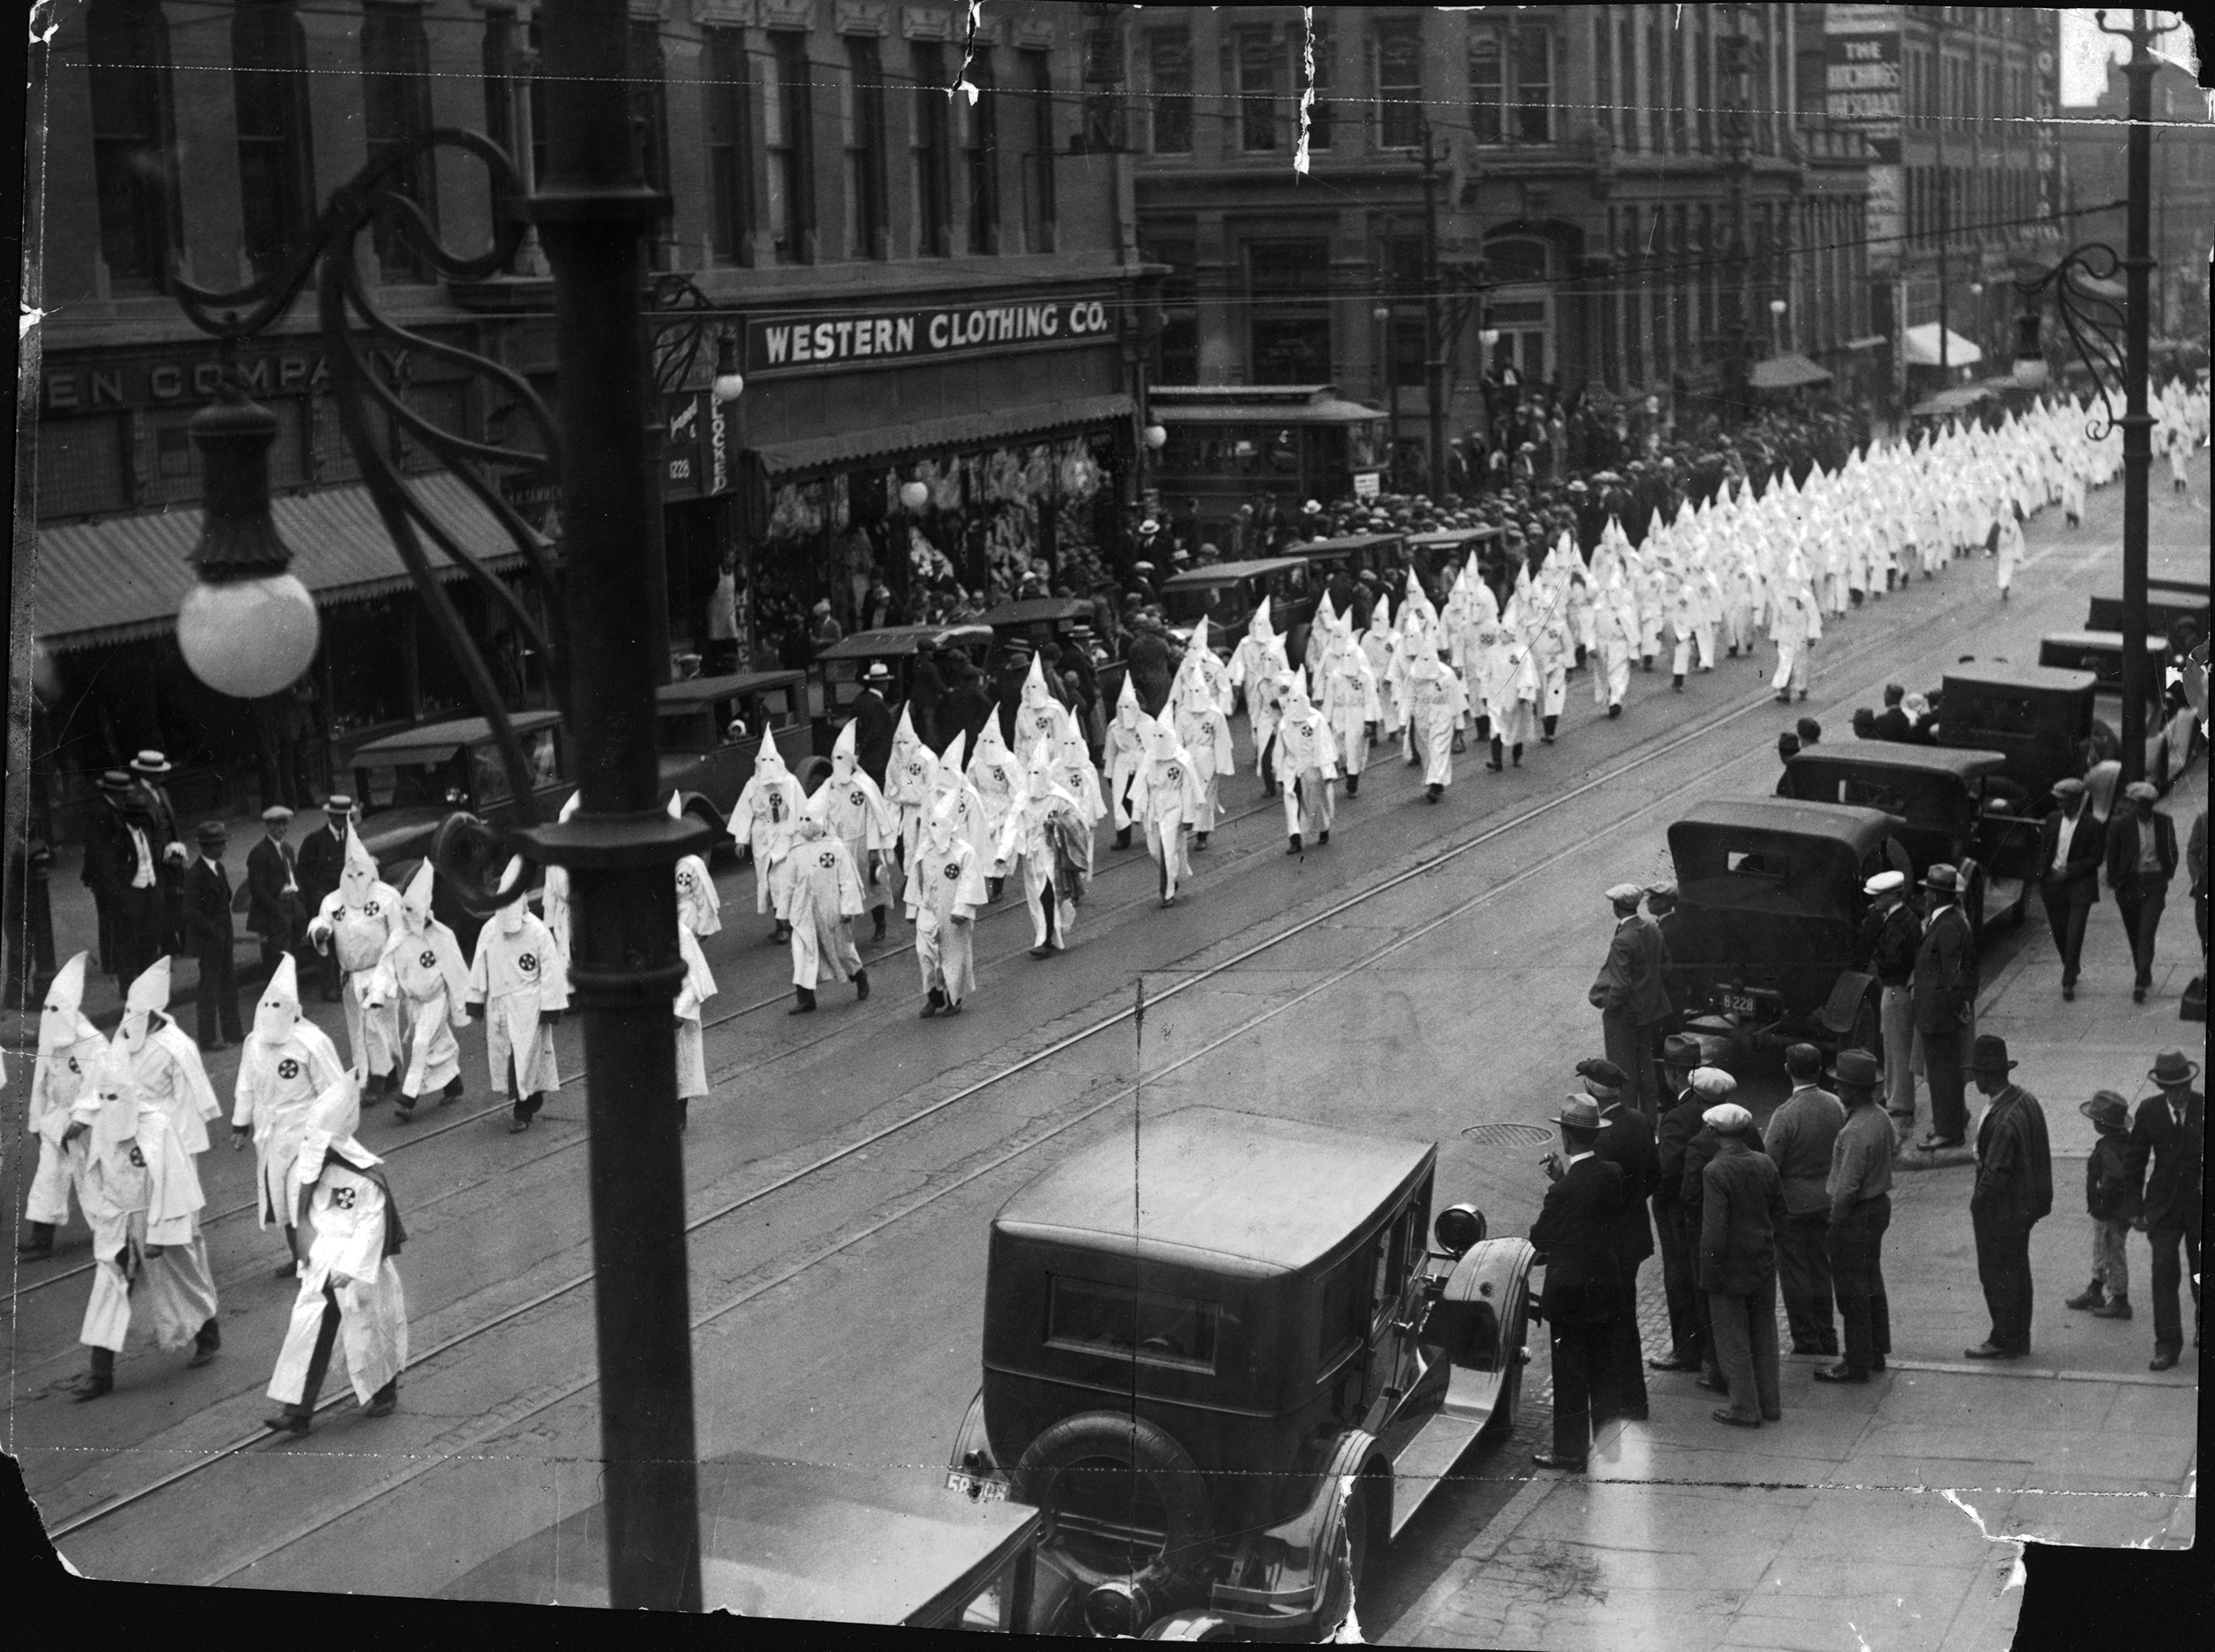 Klan marchers on Seventeenth Street in Denver